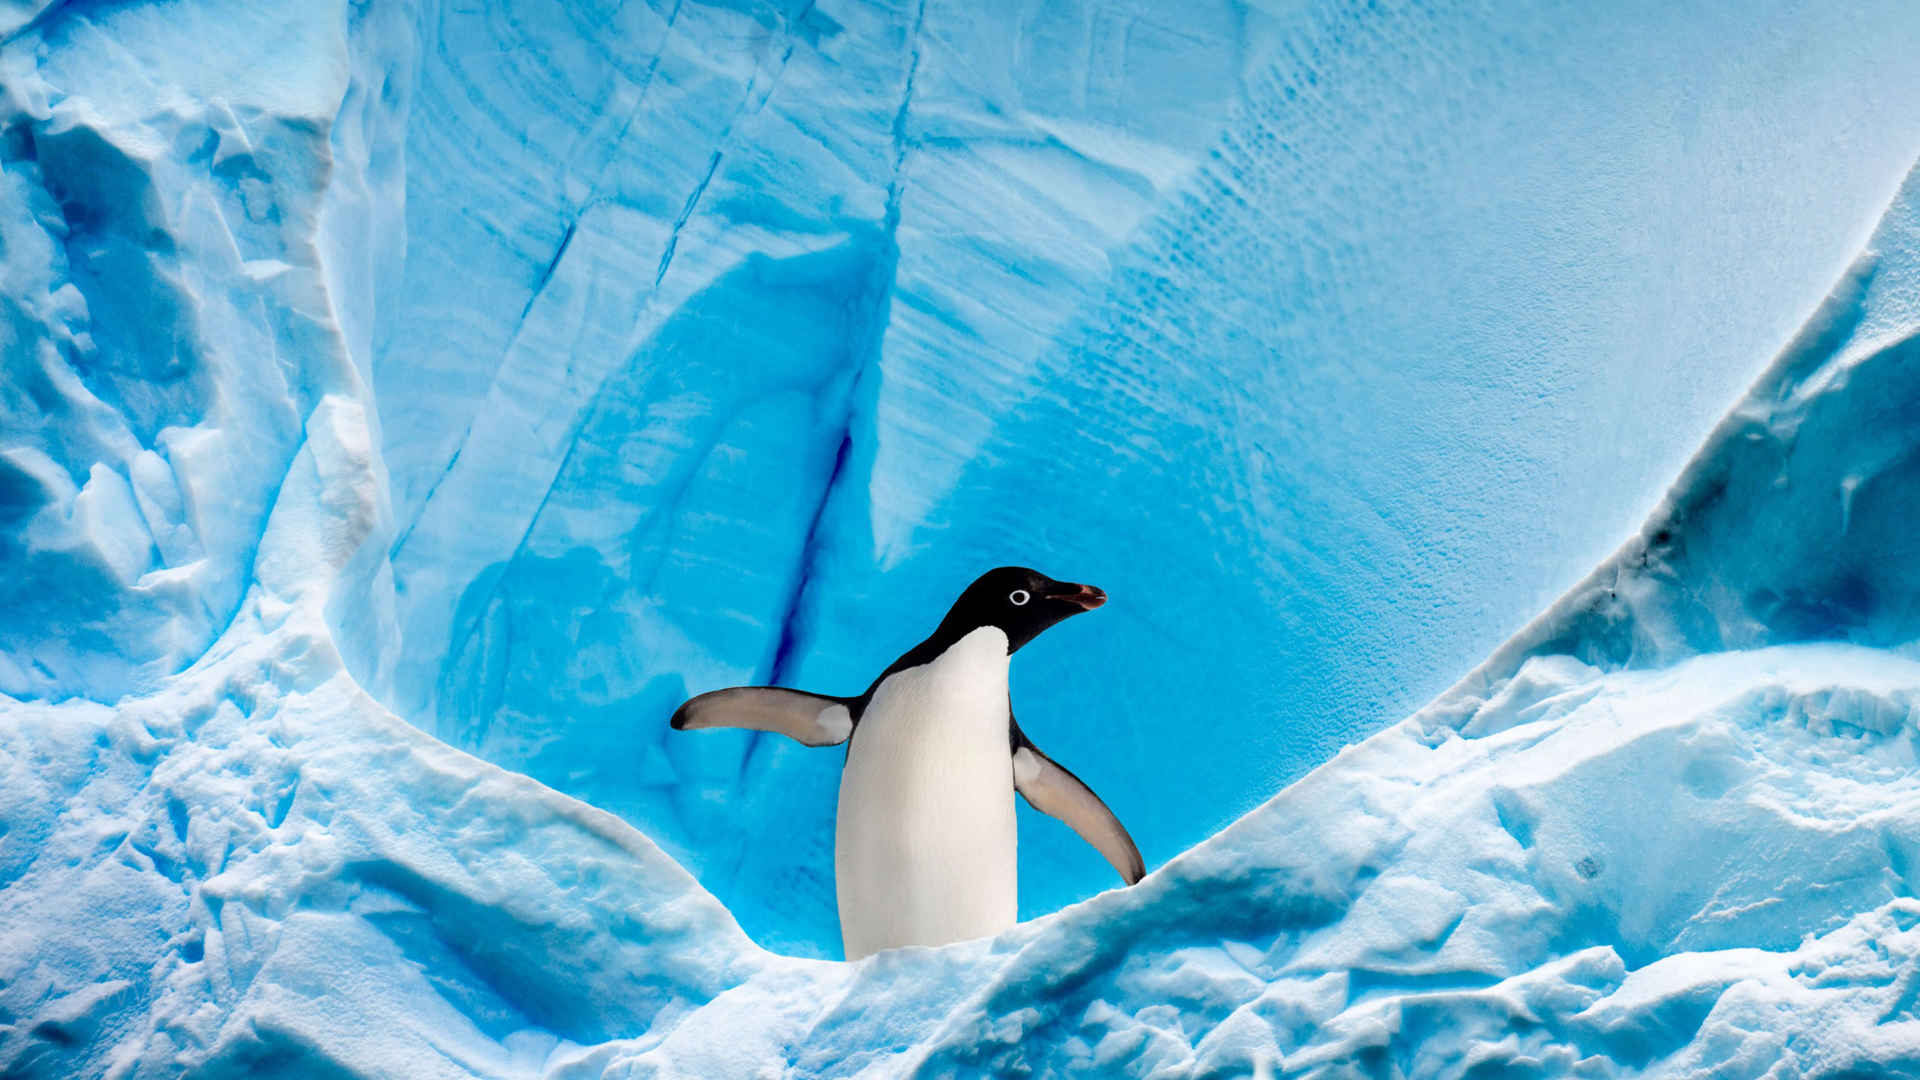 极地企鹅一个人呆着很舒心图片